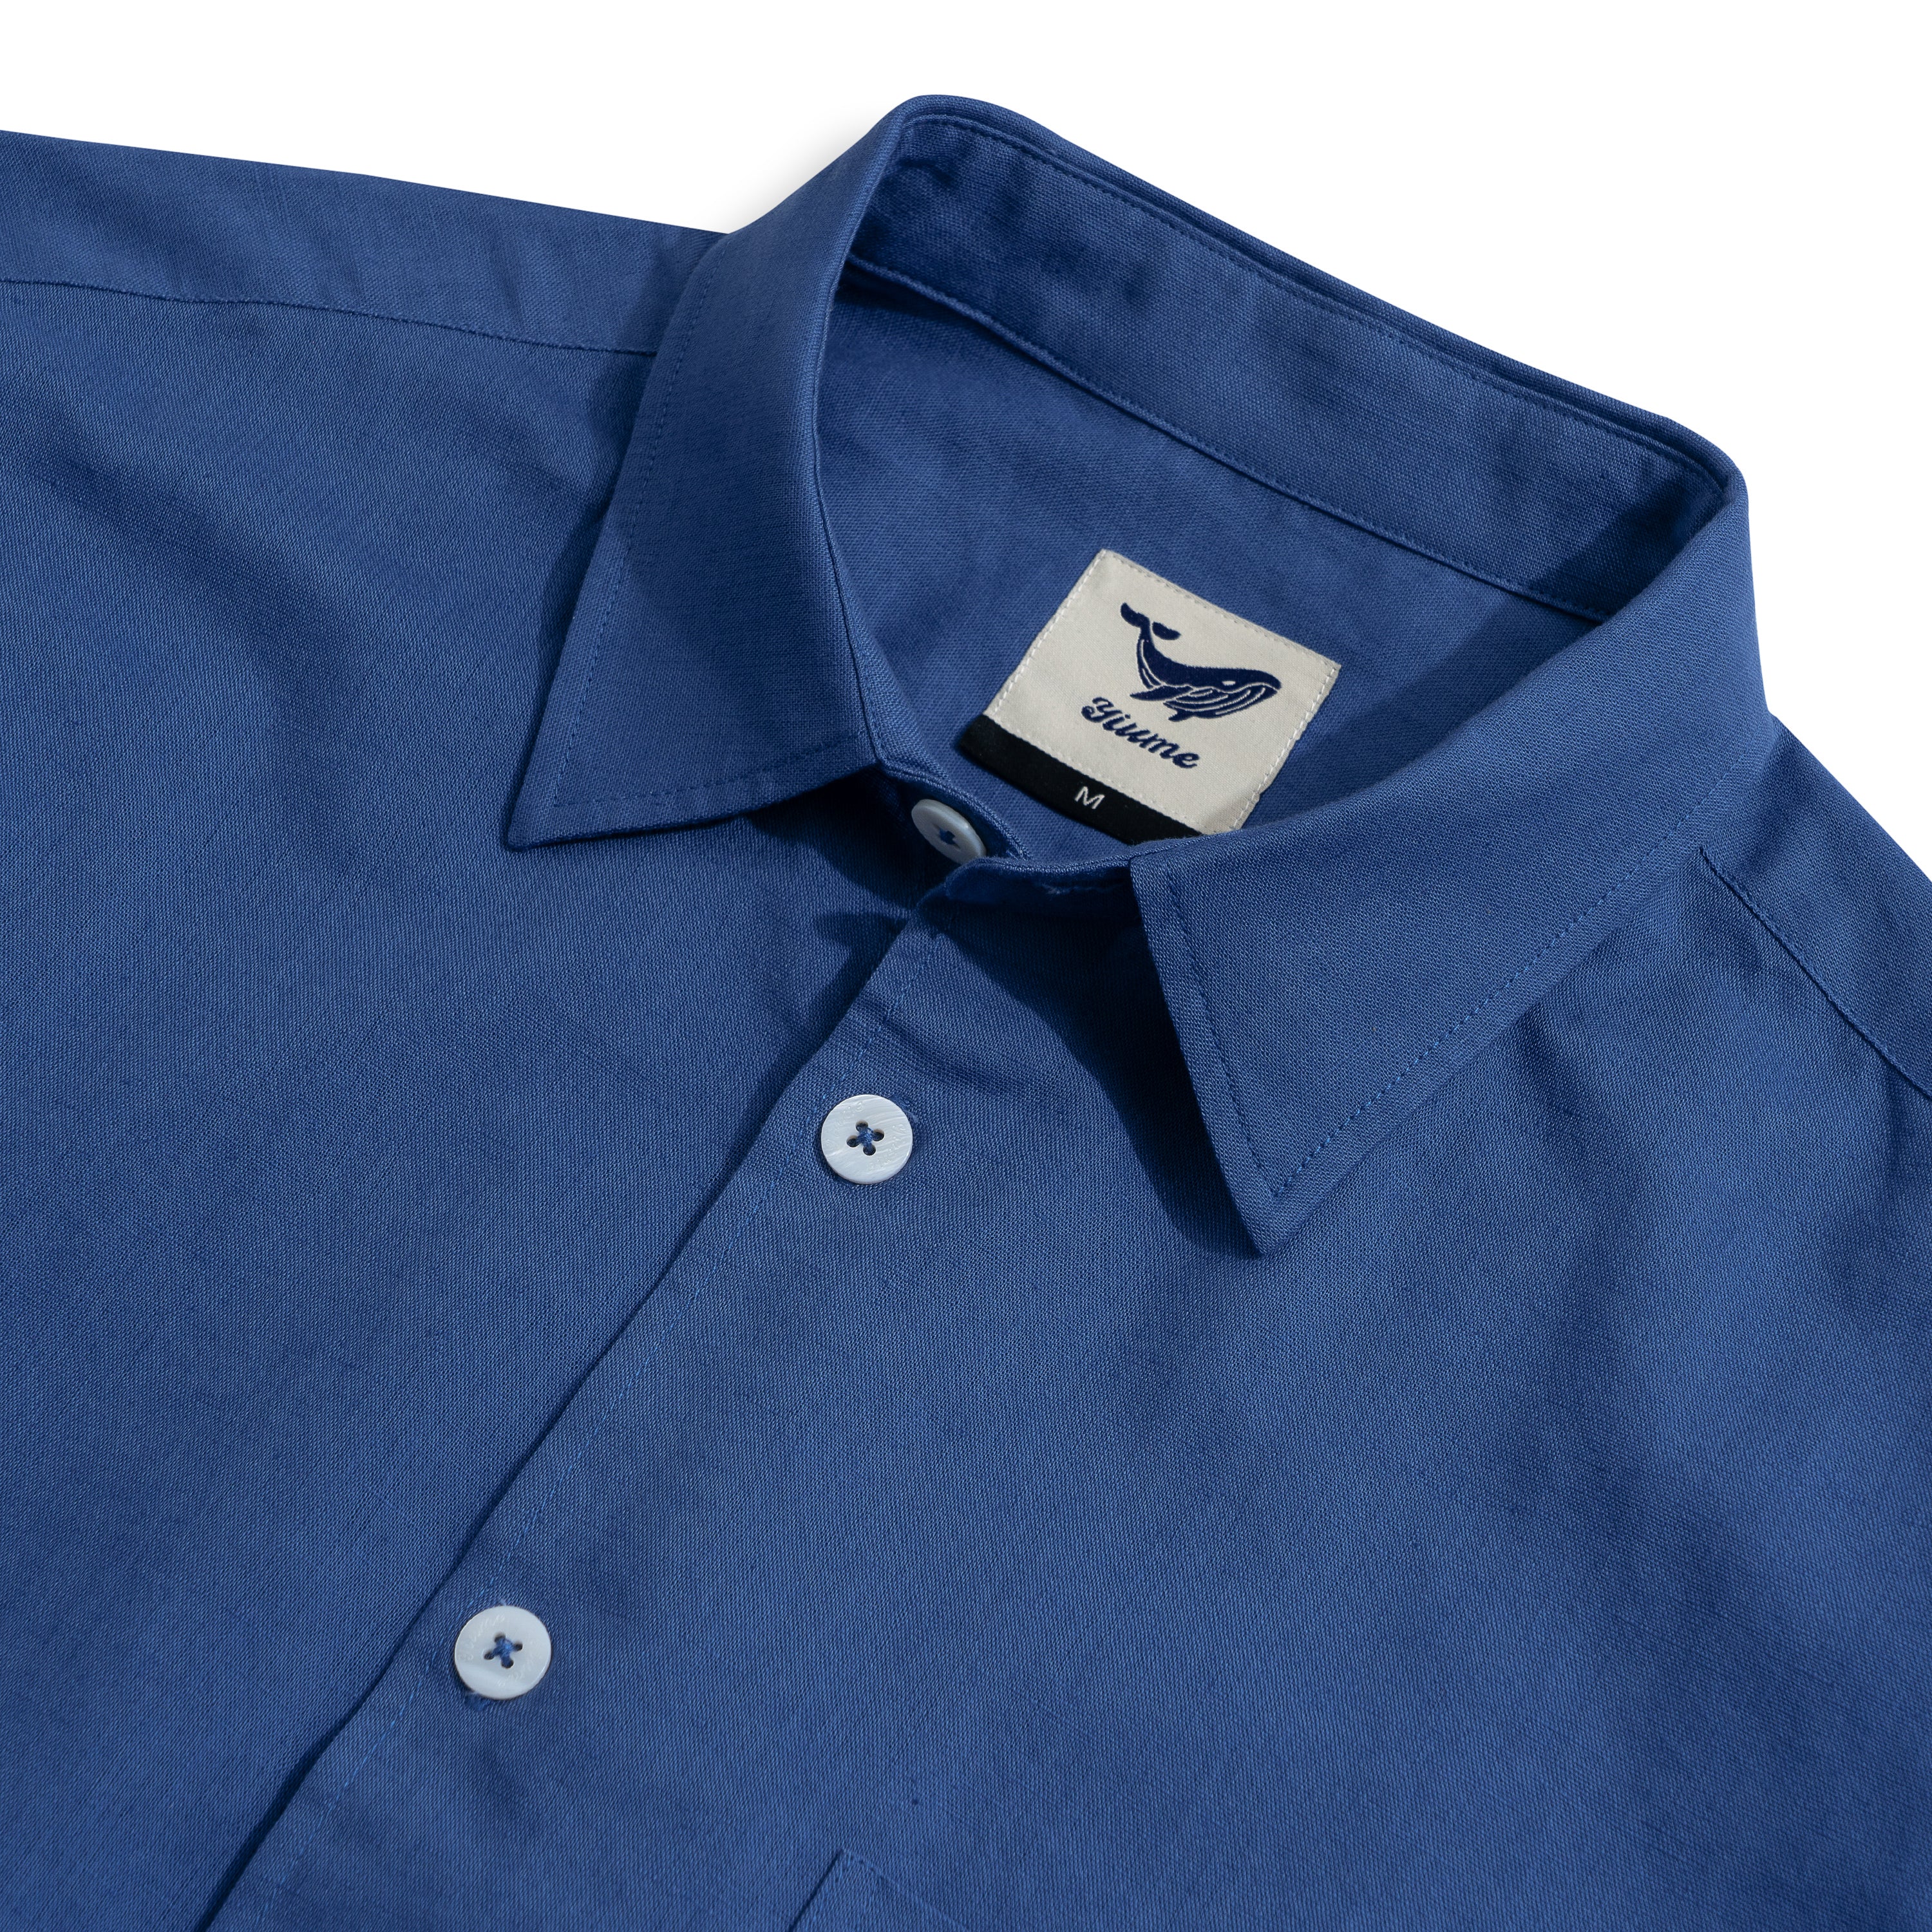 Hawaiian Shirt For Men Riviera Holiday Pointed Collar Long Sleeve Shirt - Royal Blue